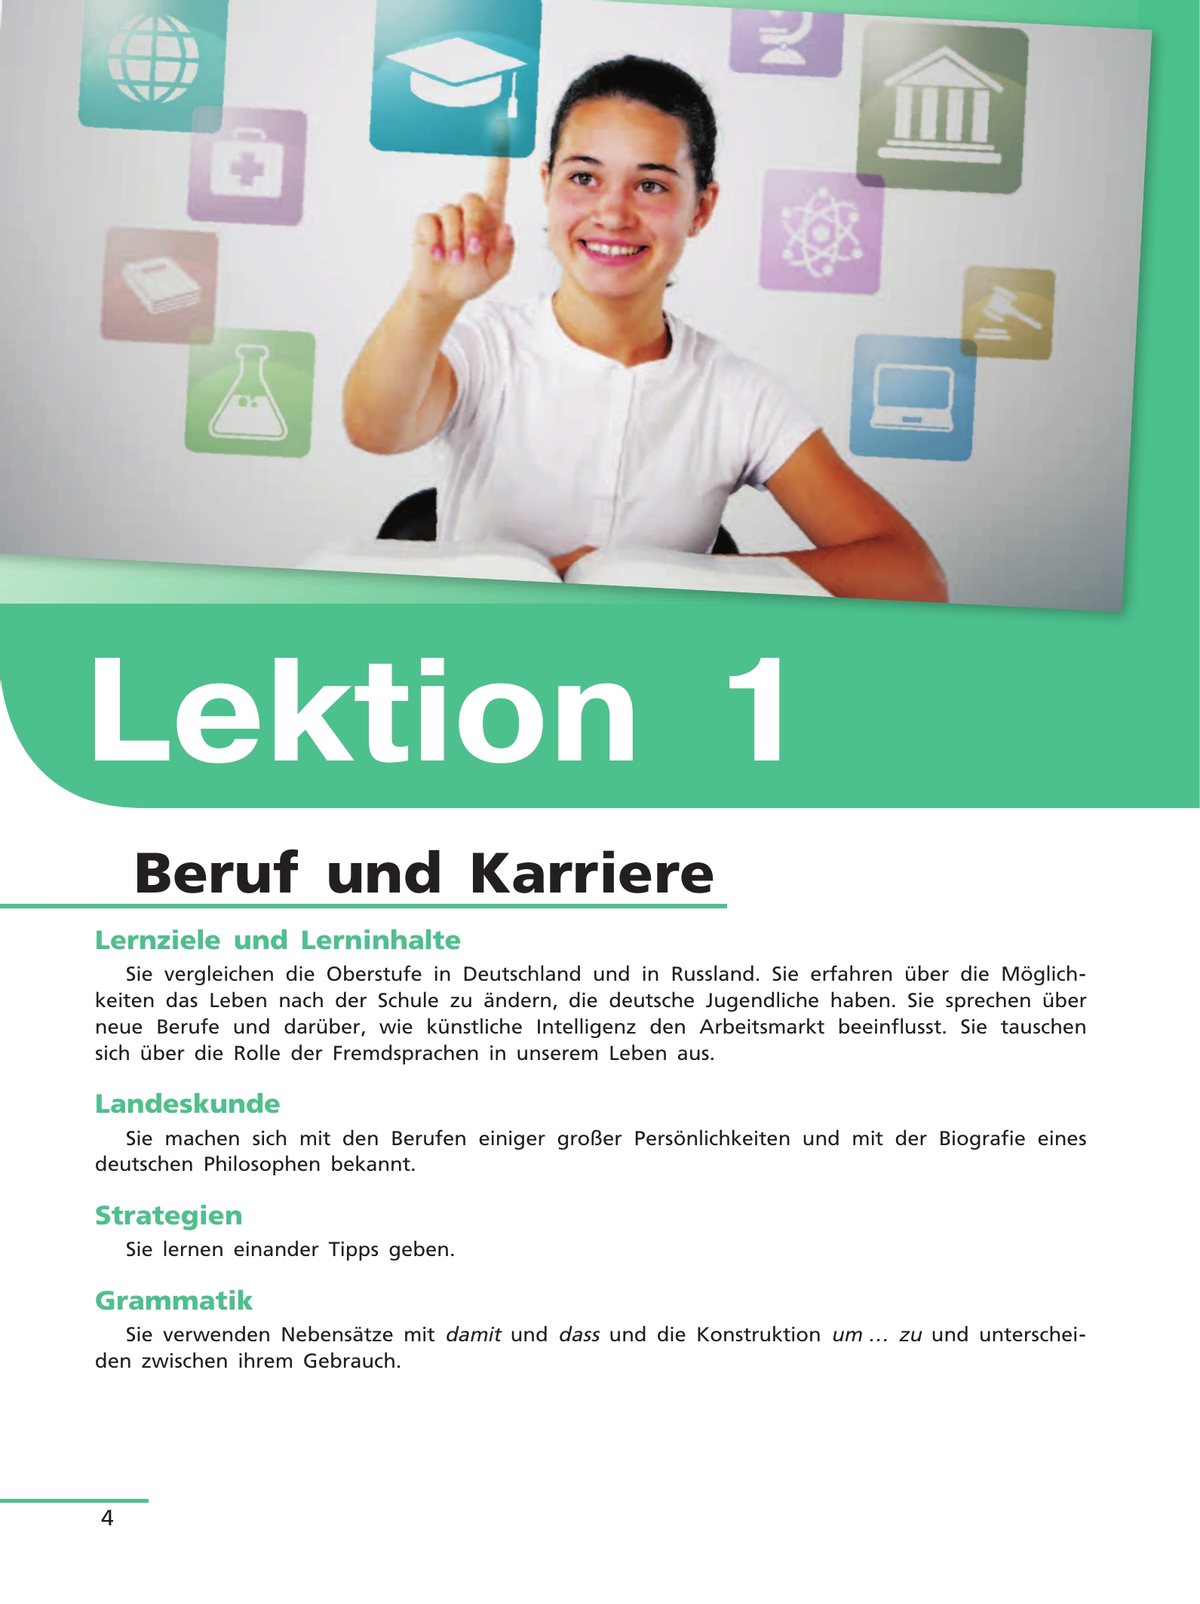 Немецкий язык. 11 класс. Учебник для общеобразовательных организаций. Базовый уровень 4